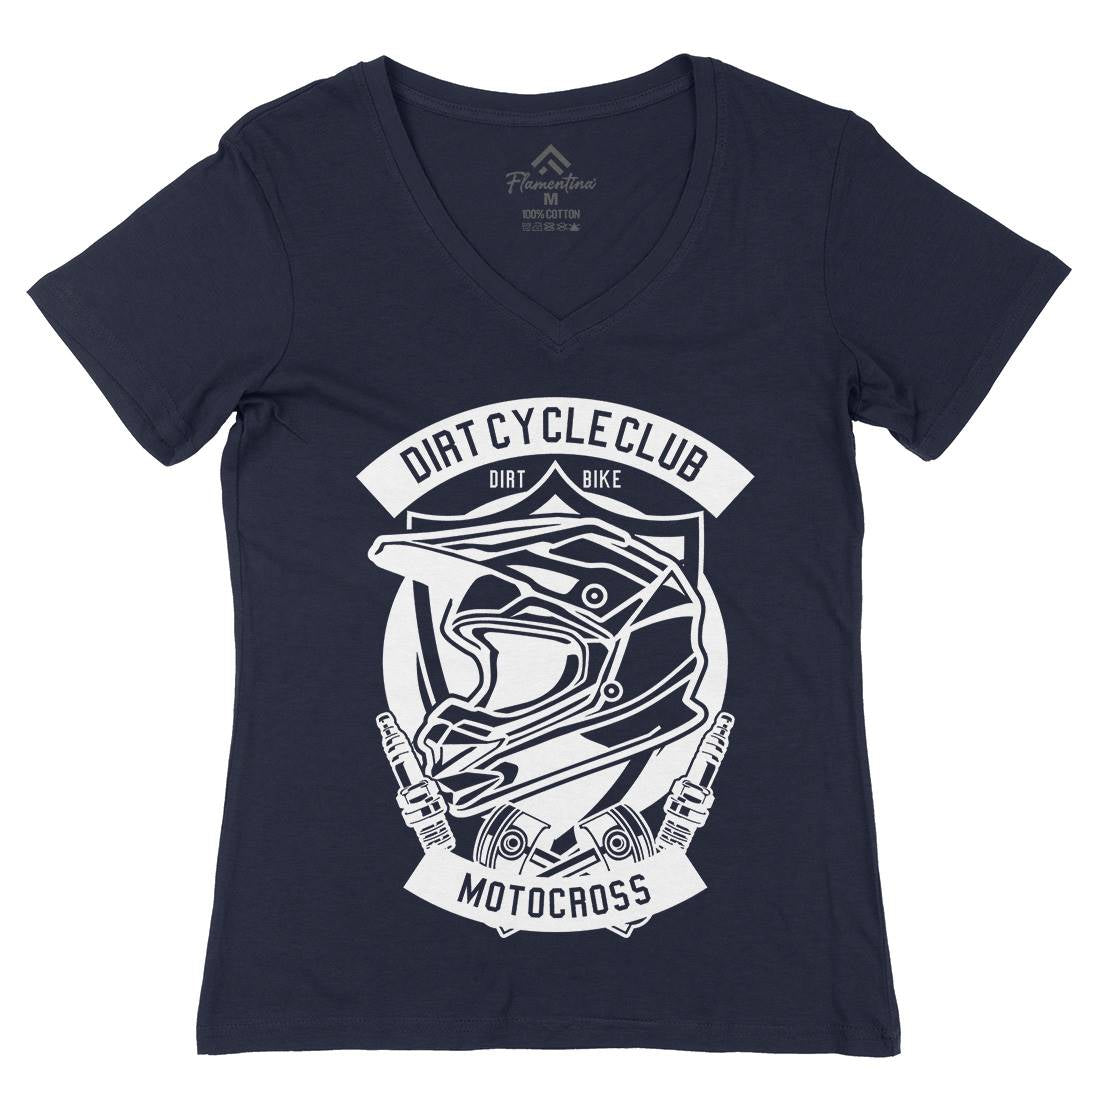 Dirty Cycle Club Womens Organic V-Neck T-Shirt Motorcycles B532